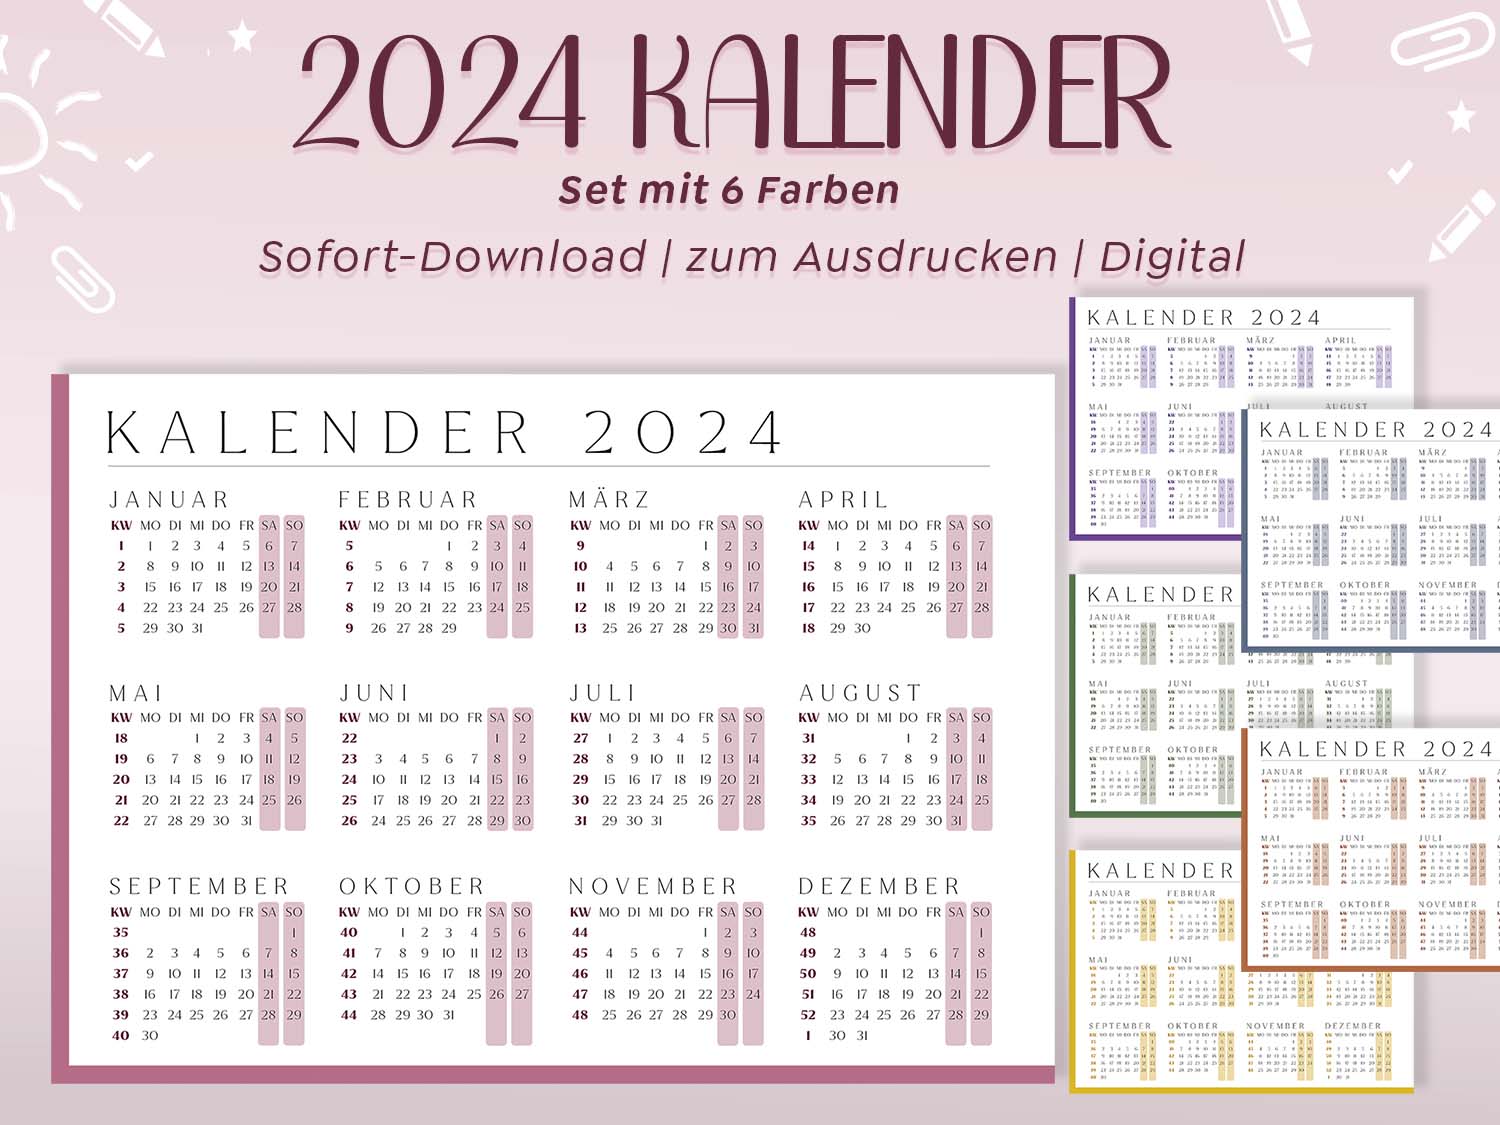 Digitaler Kalender 2024 mit minimalistischem Design in 6 Farben. Enthält Kalenderwochen, Monatsnamen und Wochentage. Sofortiger Download von hochauflösenden PDF- und JPG-Dateien. Drucke diesen nach Bedarf in den Größen DIN A5, A4, A3 oder A2 aus.